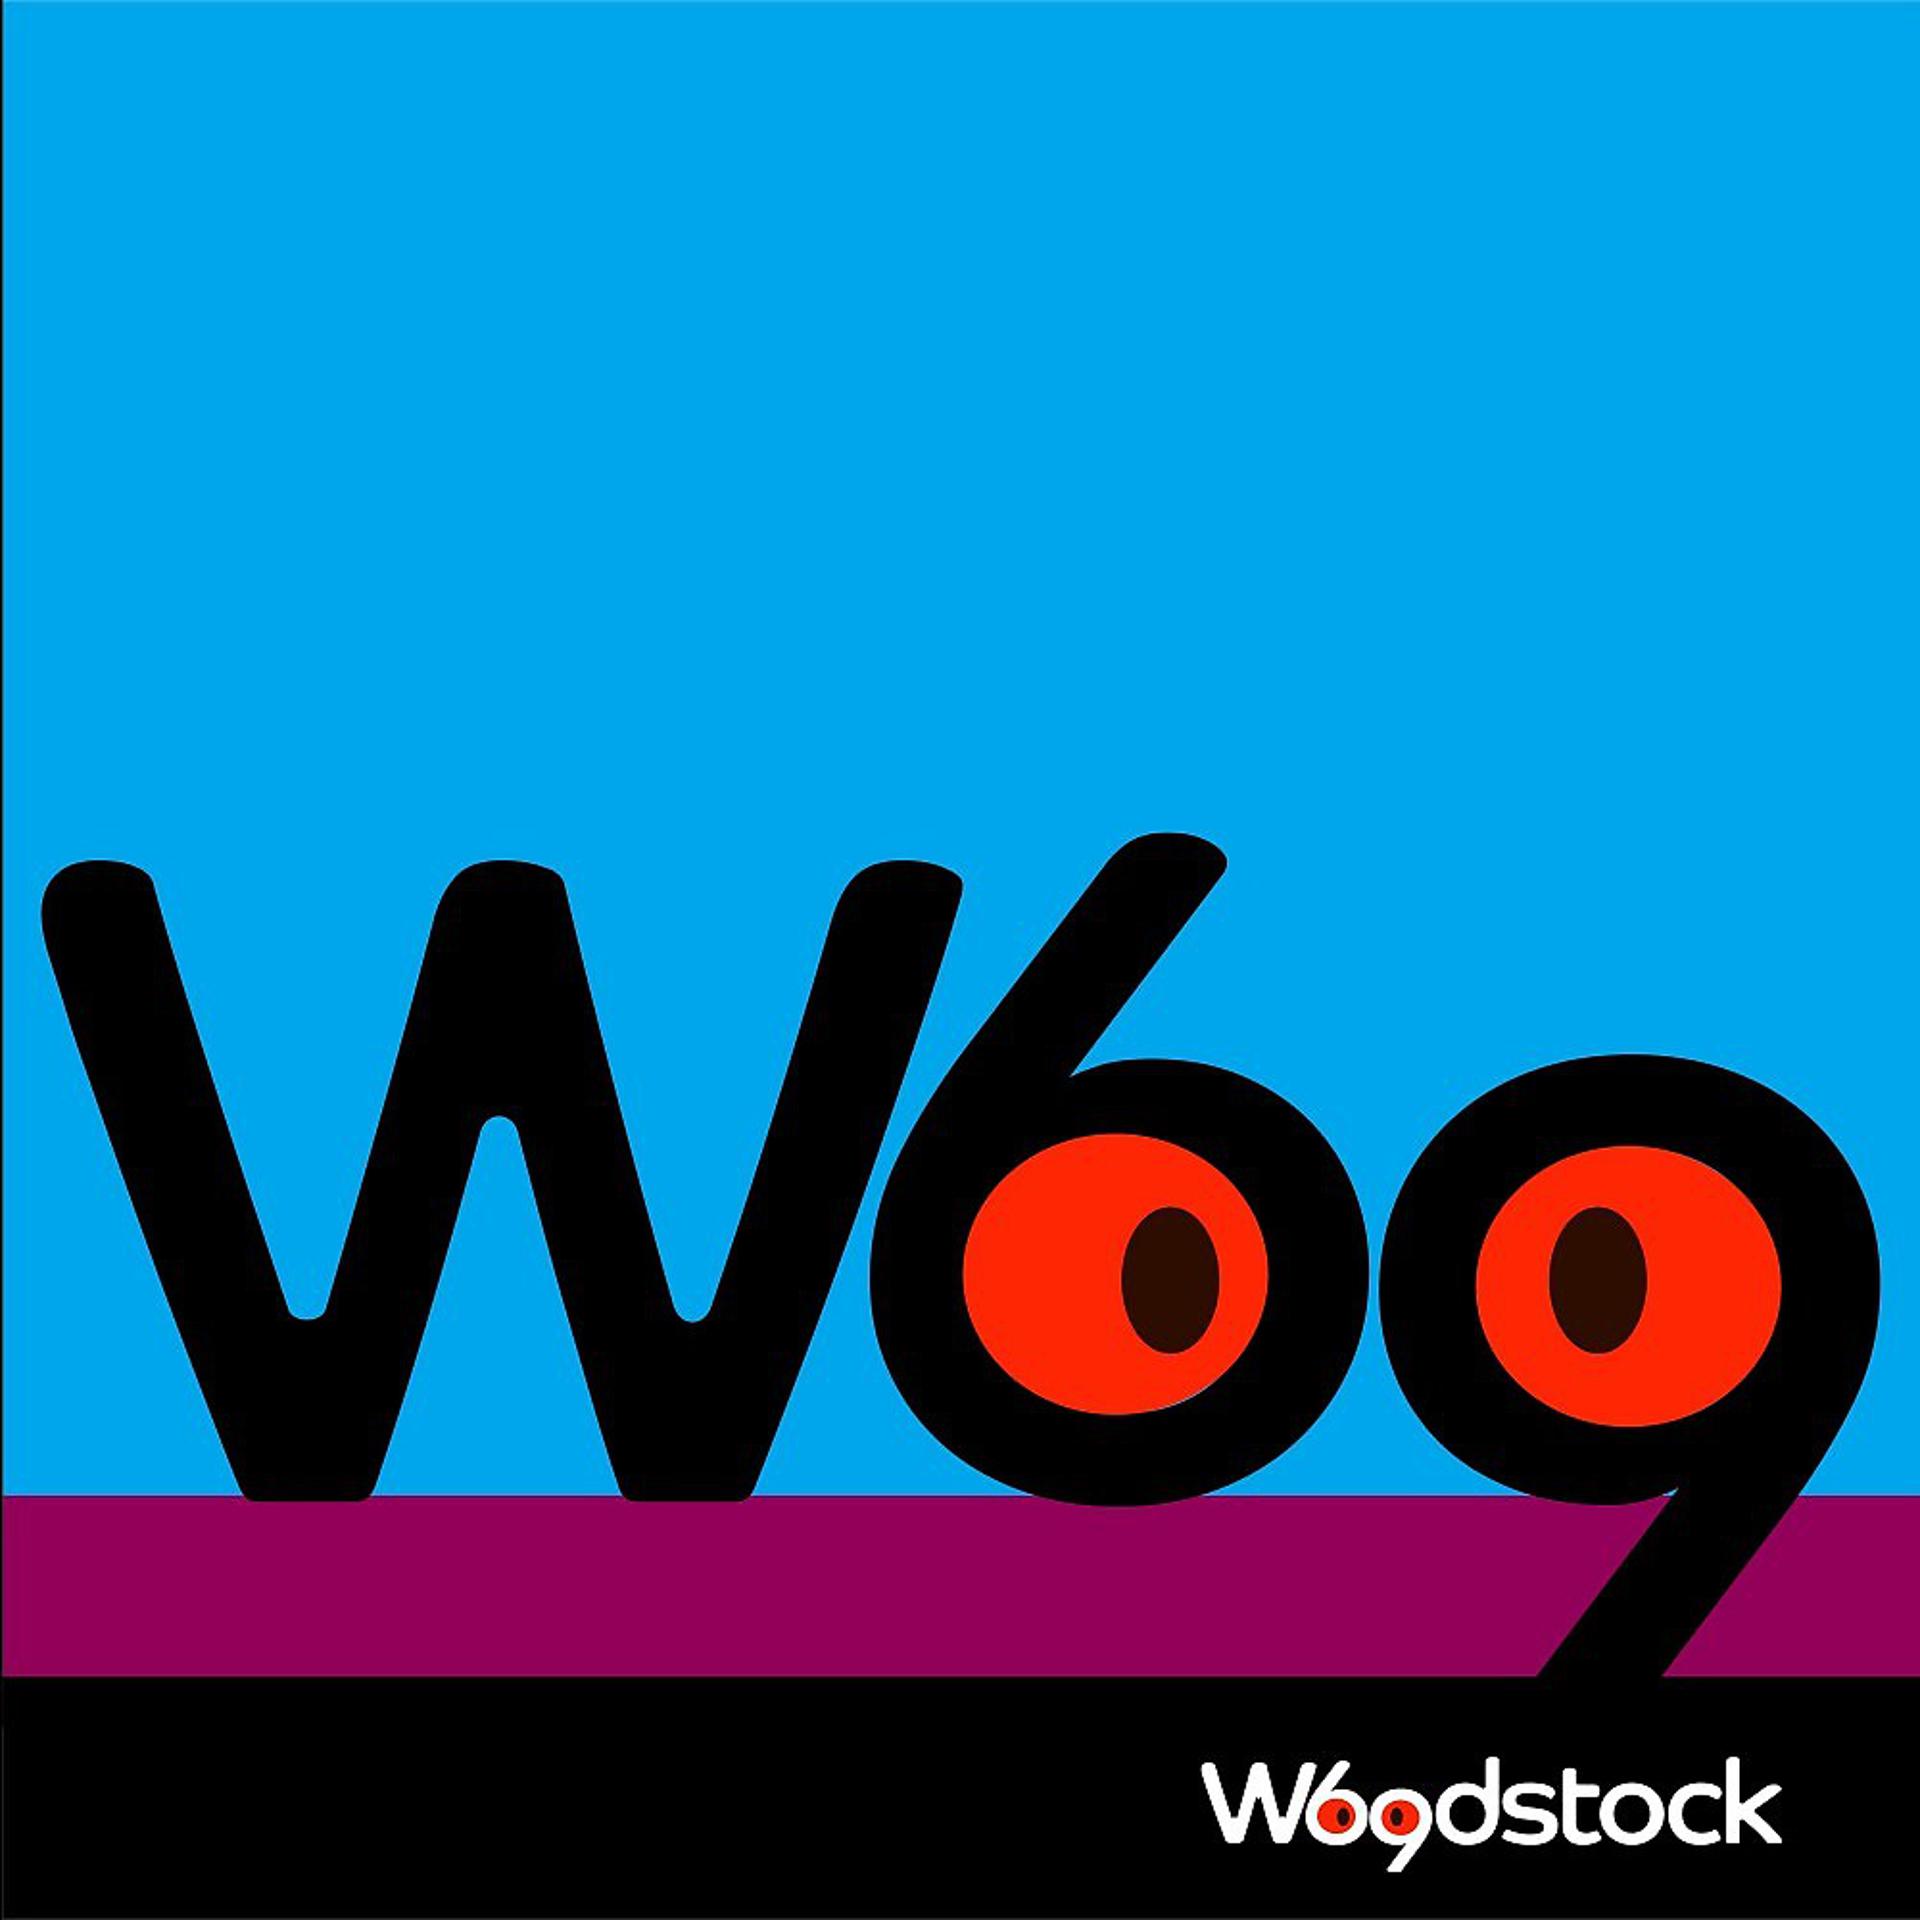 Постер альбома Woodstock 69